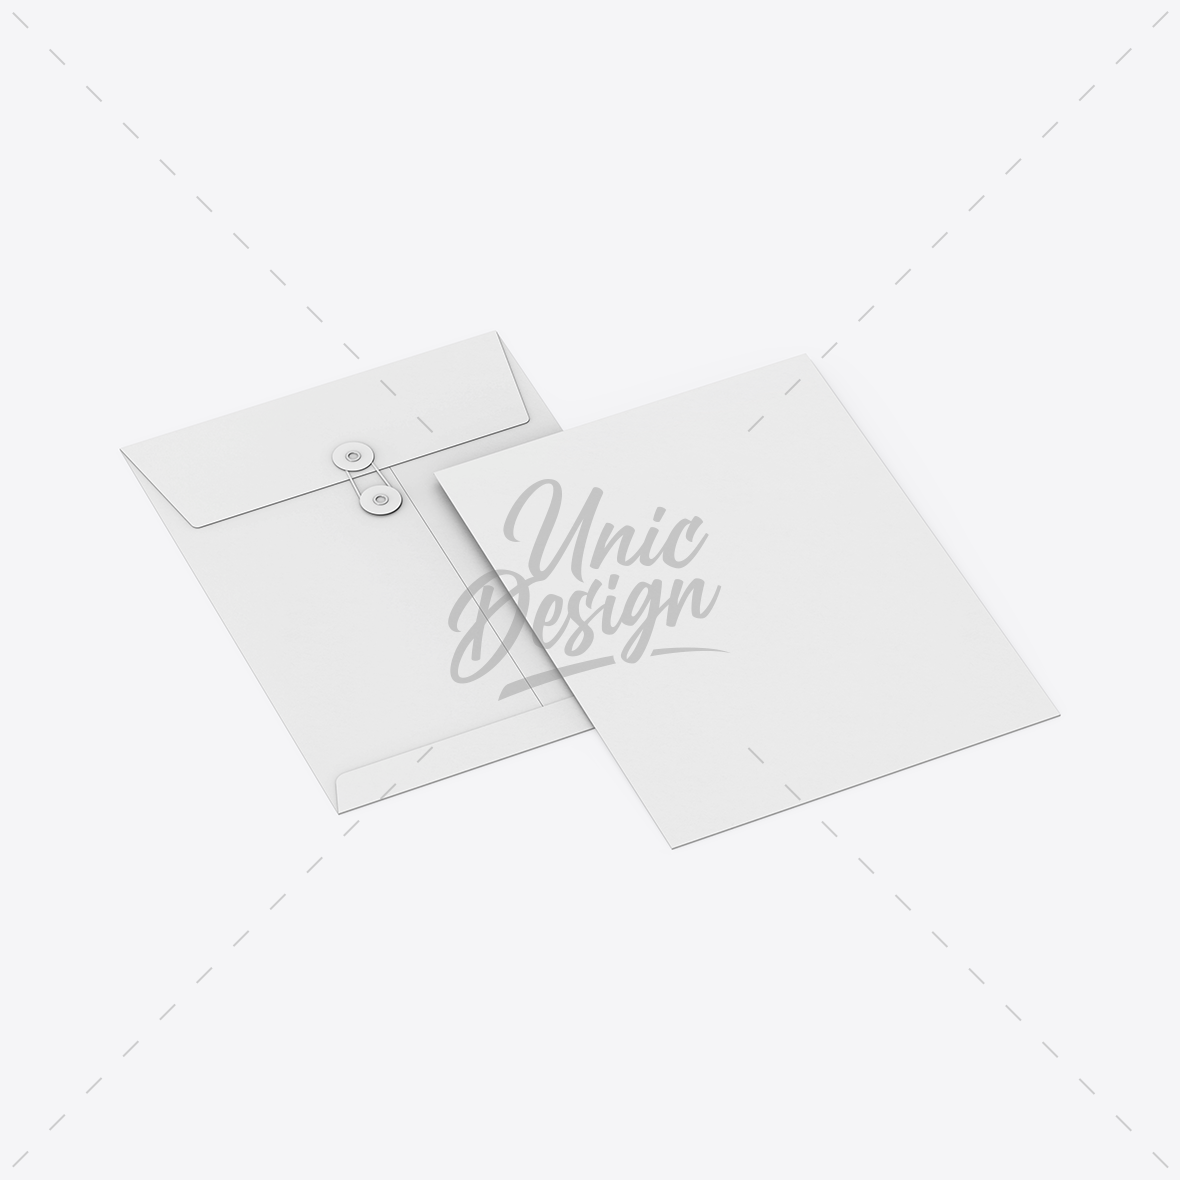 Paper Button & String Envelope Mockup